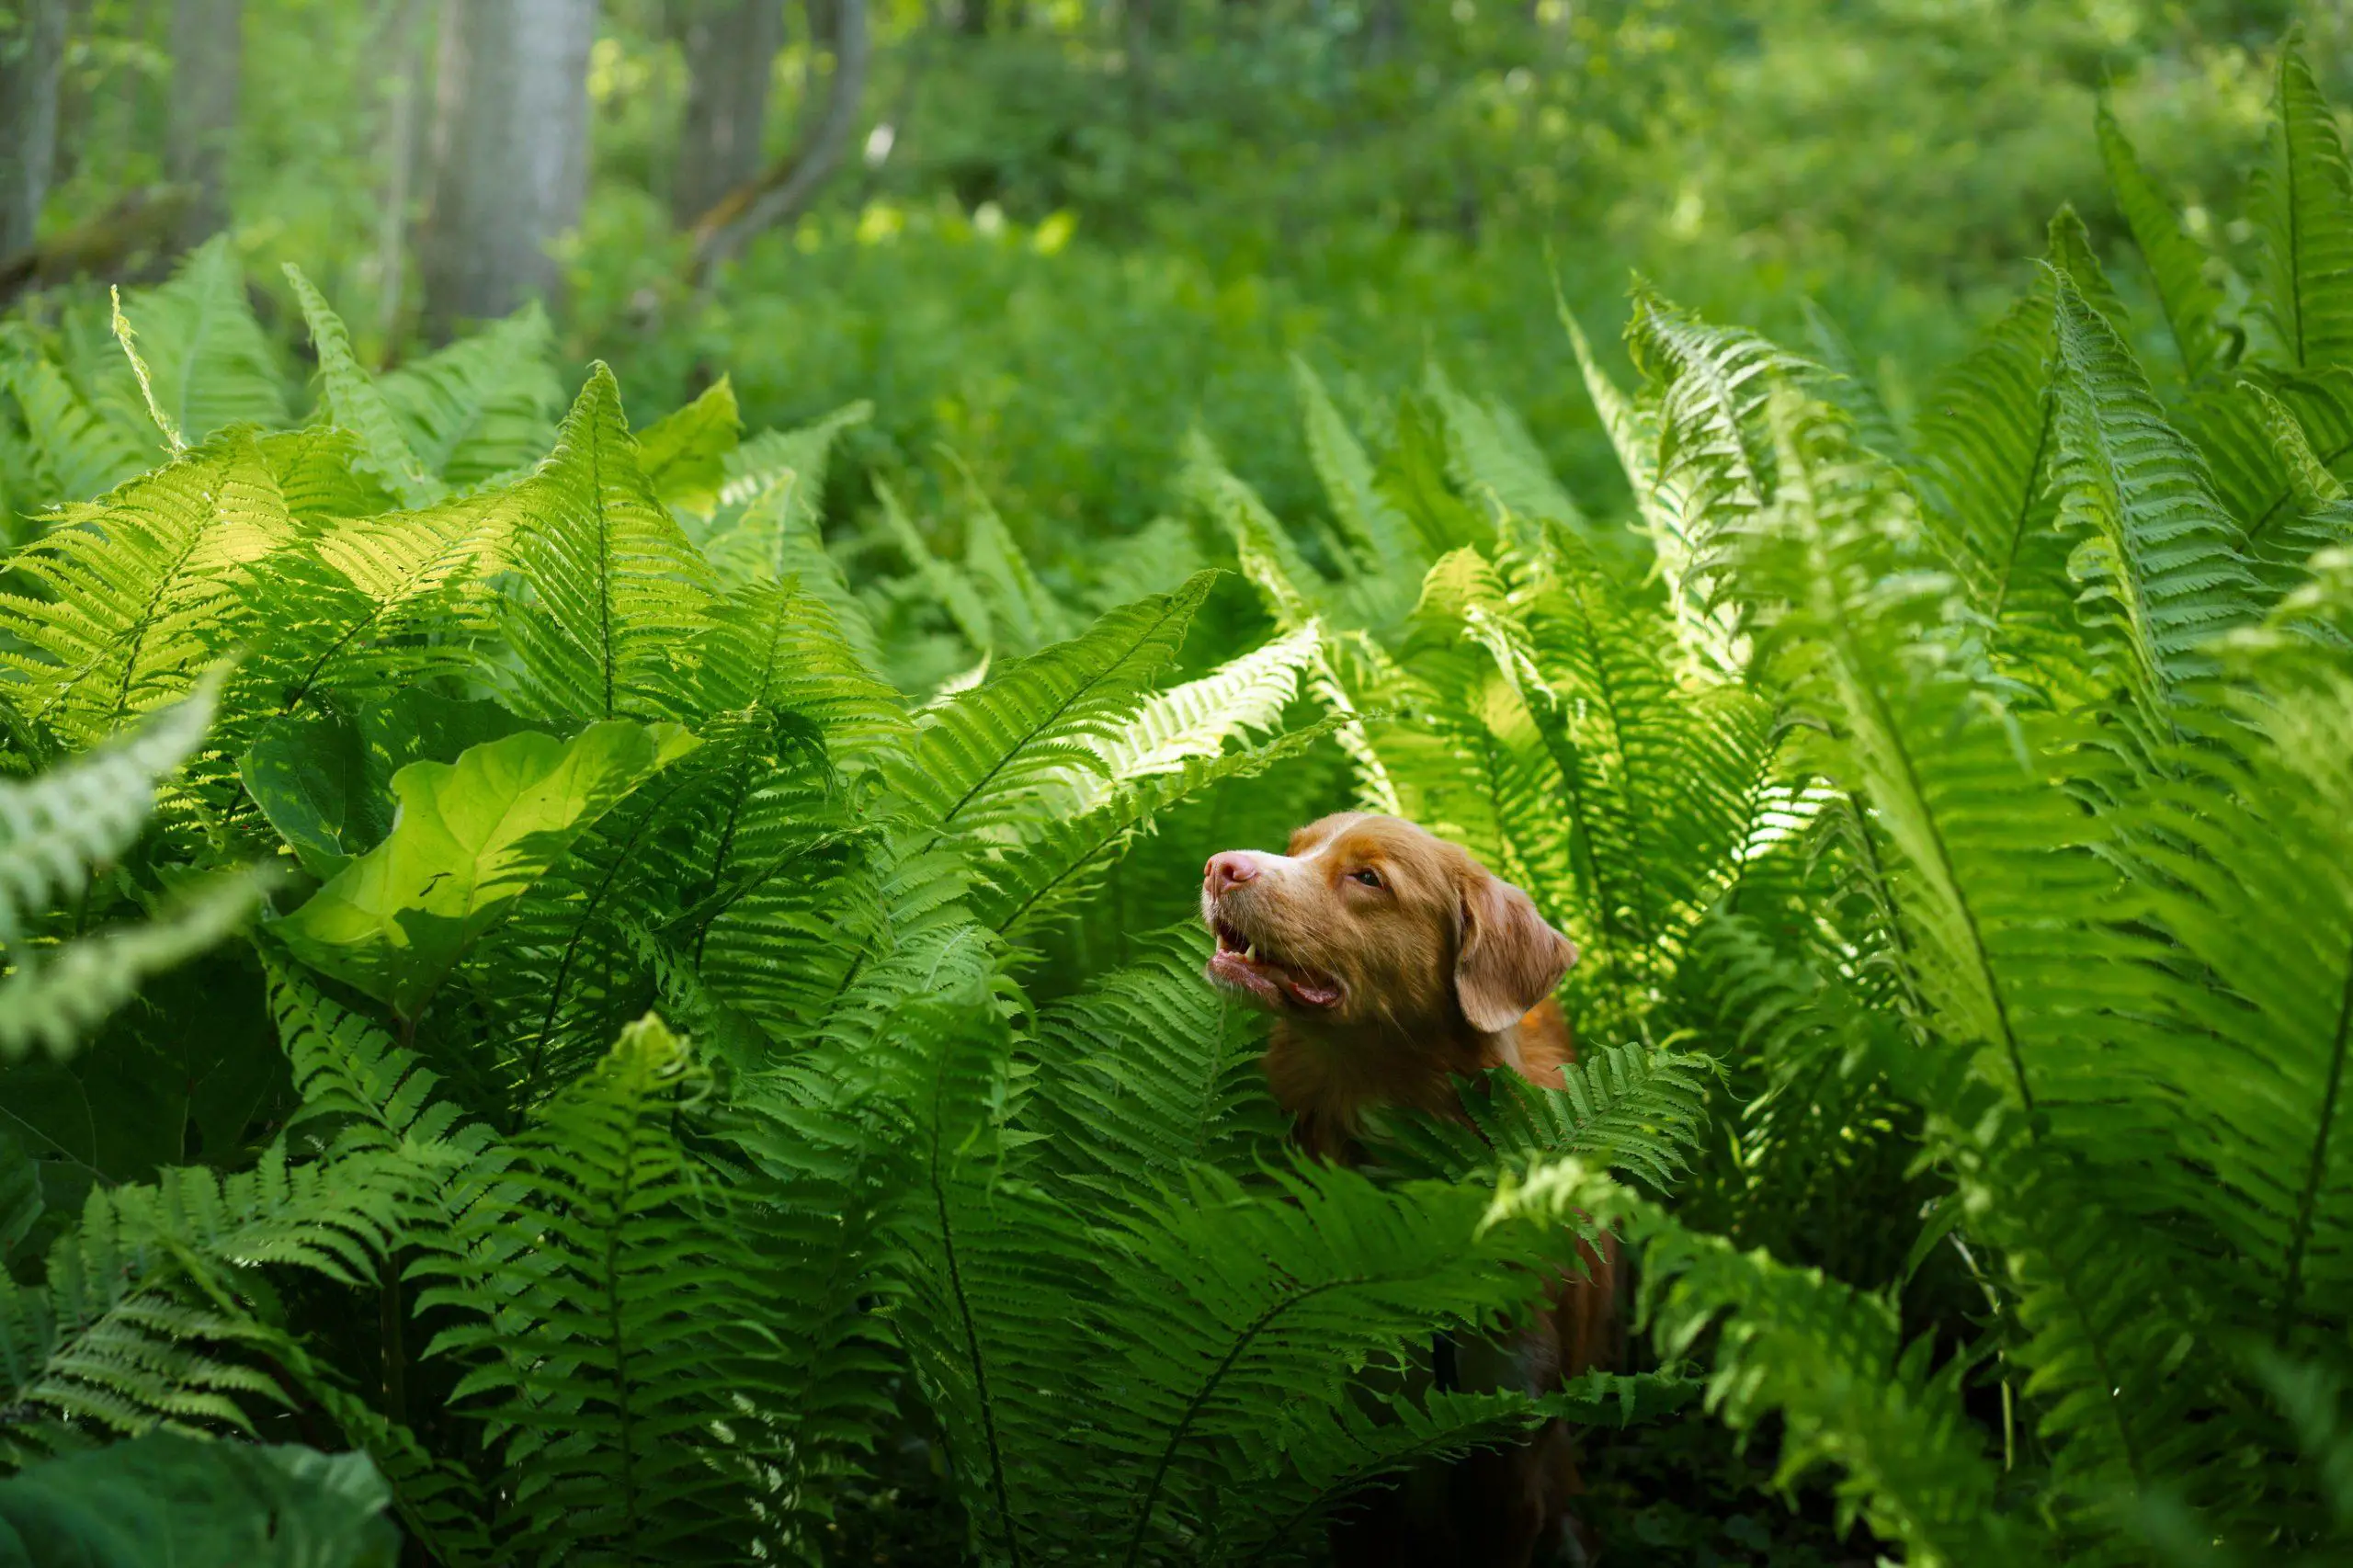 Dog running around in the ferns